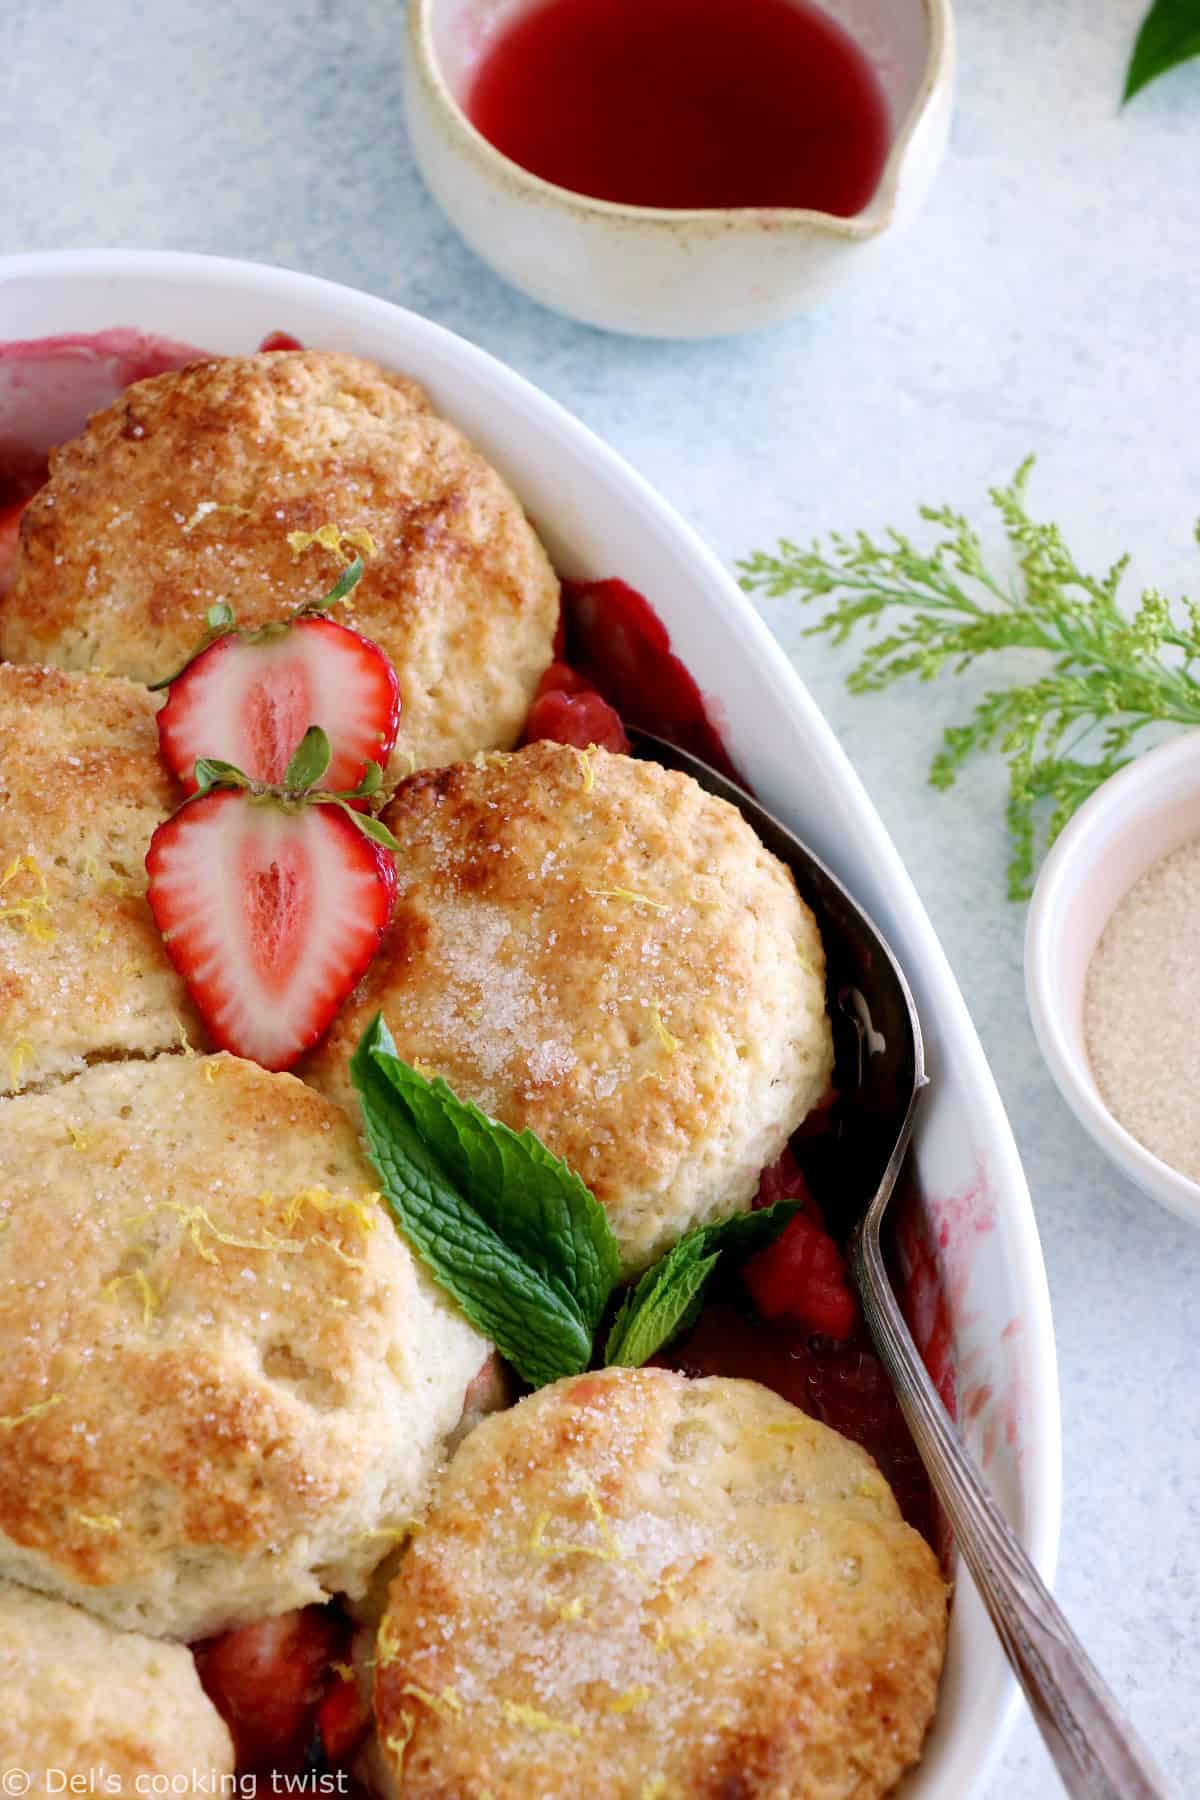 Le cobbler pommes, fraises, rhubarbe, c'est un dessert qui réunit des fruits juteux et sucrés sous une généreuse couche de biscuits tendres et moelleux.